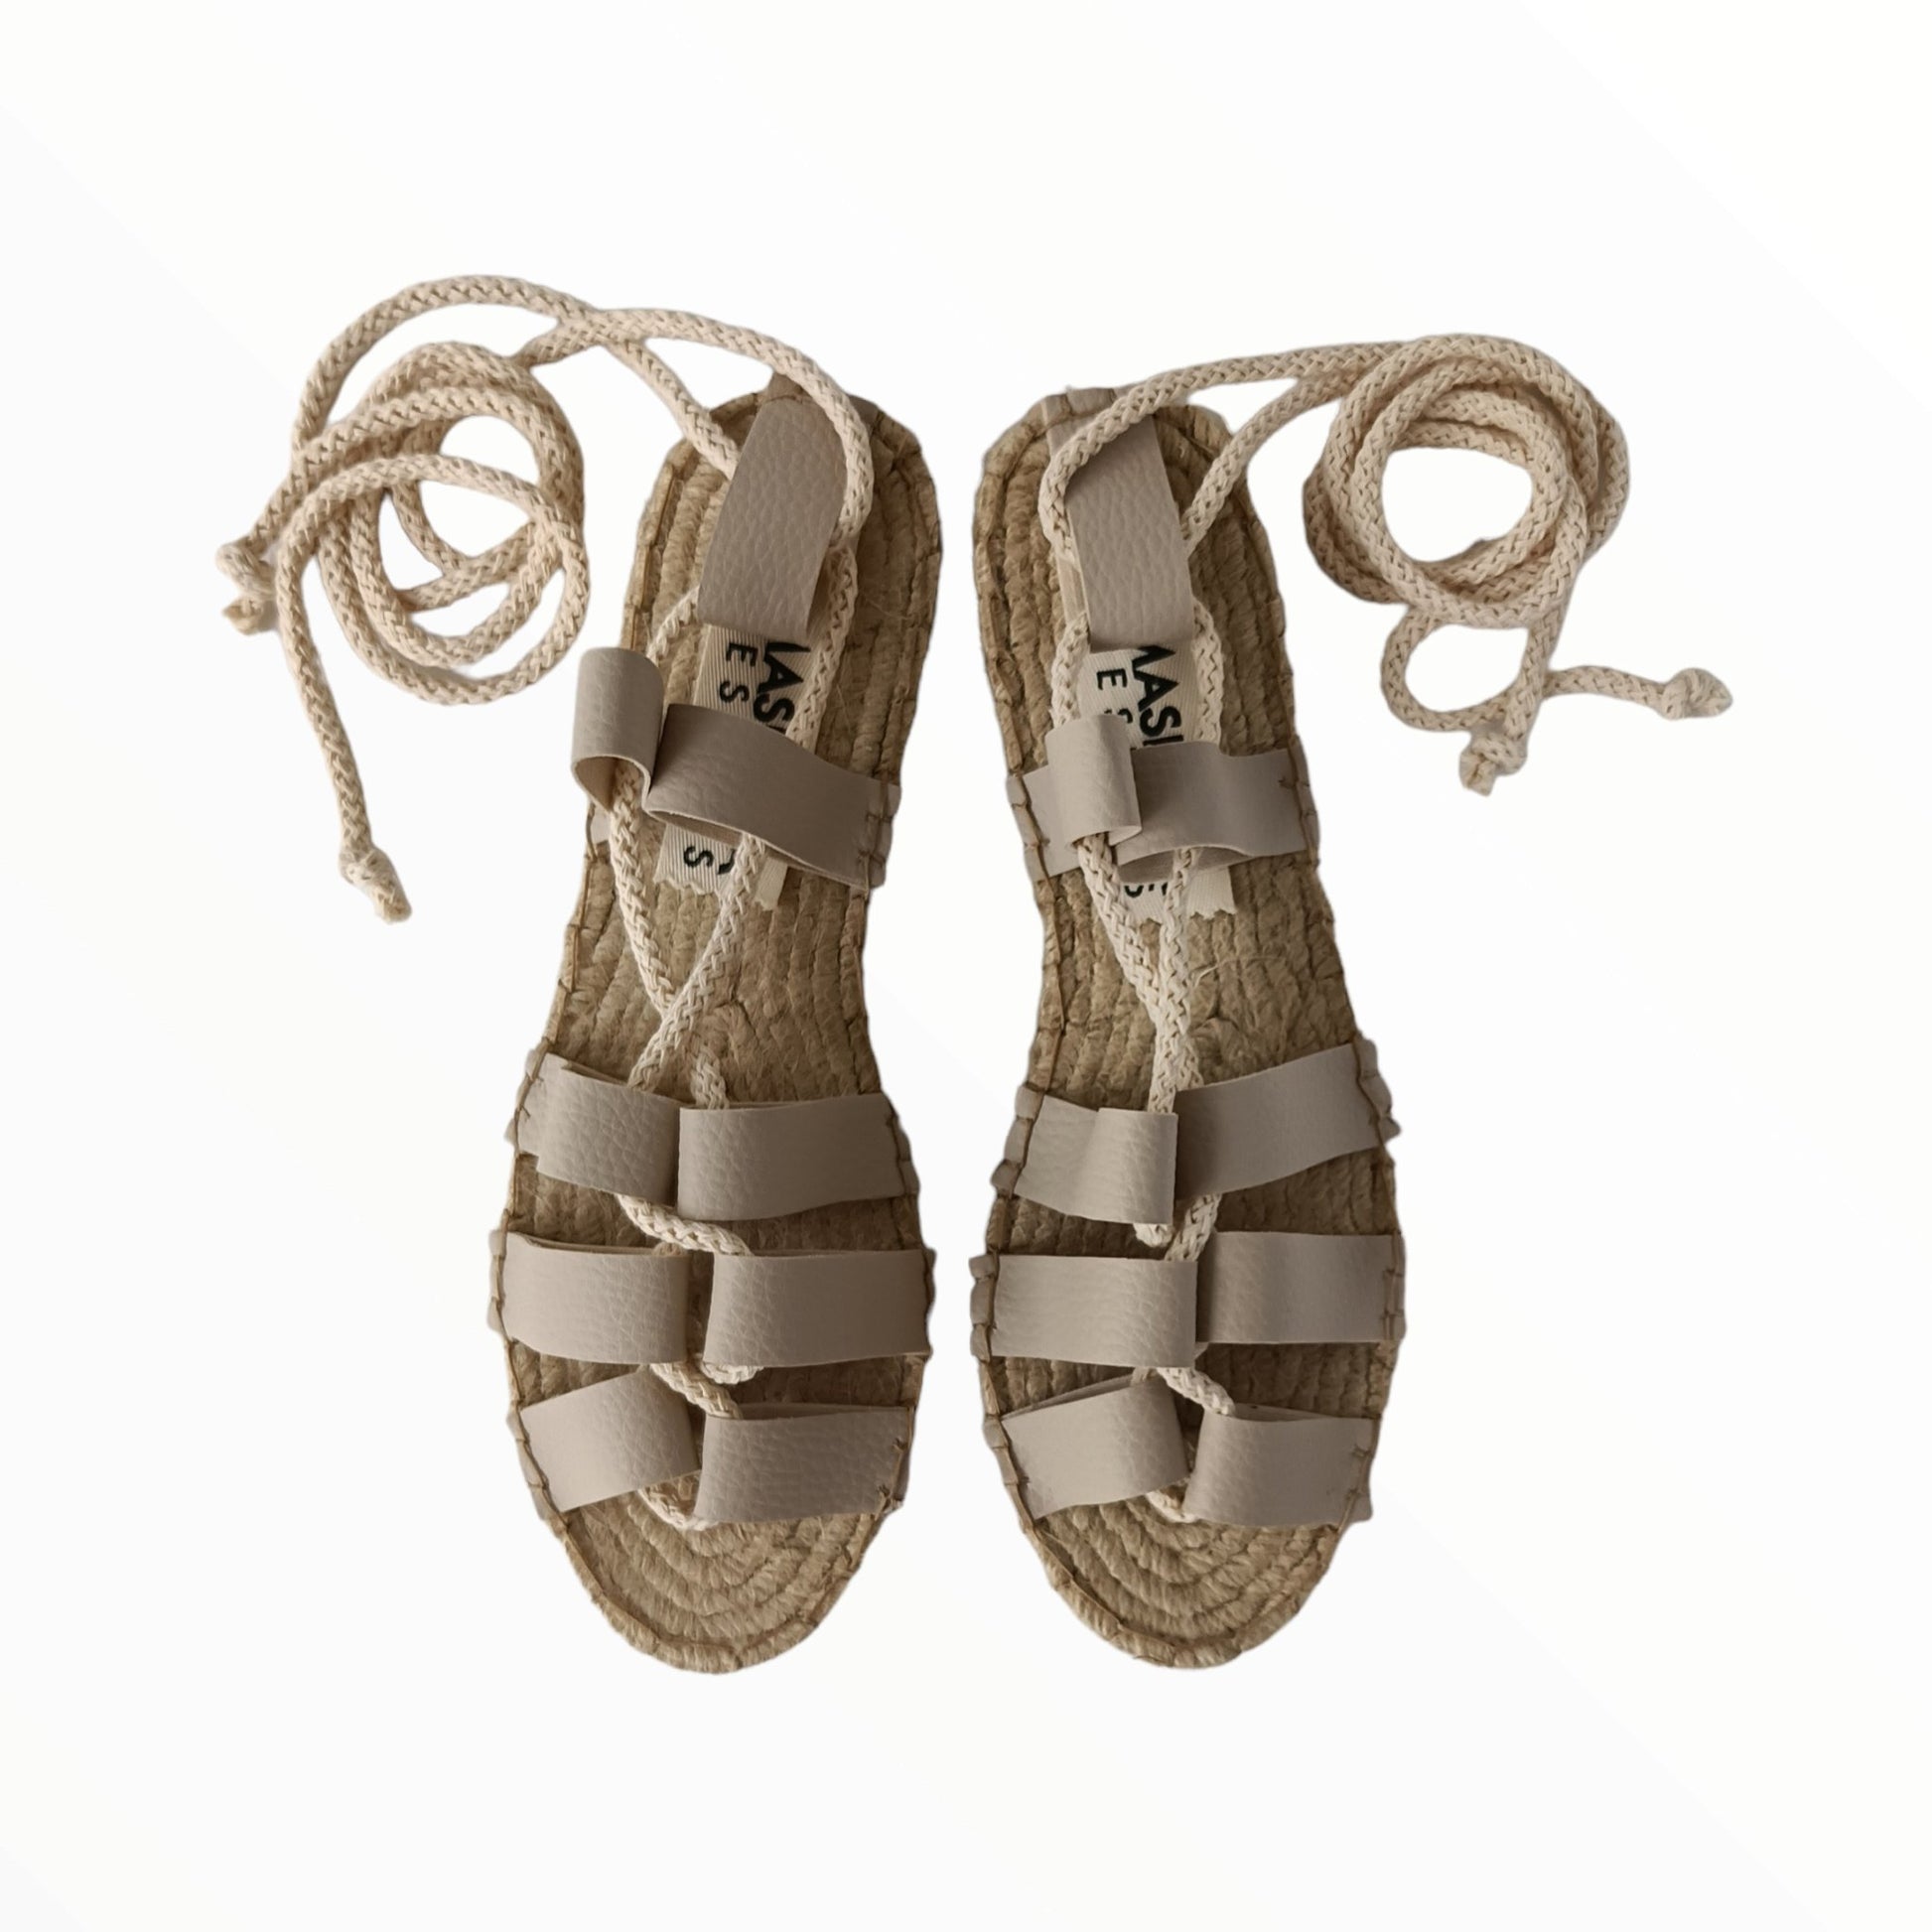 Gladiator Sandals - Vegan Leather - Off-White - Classic Sole - Maslinda Designs